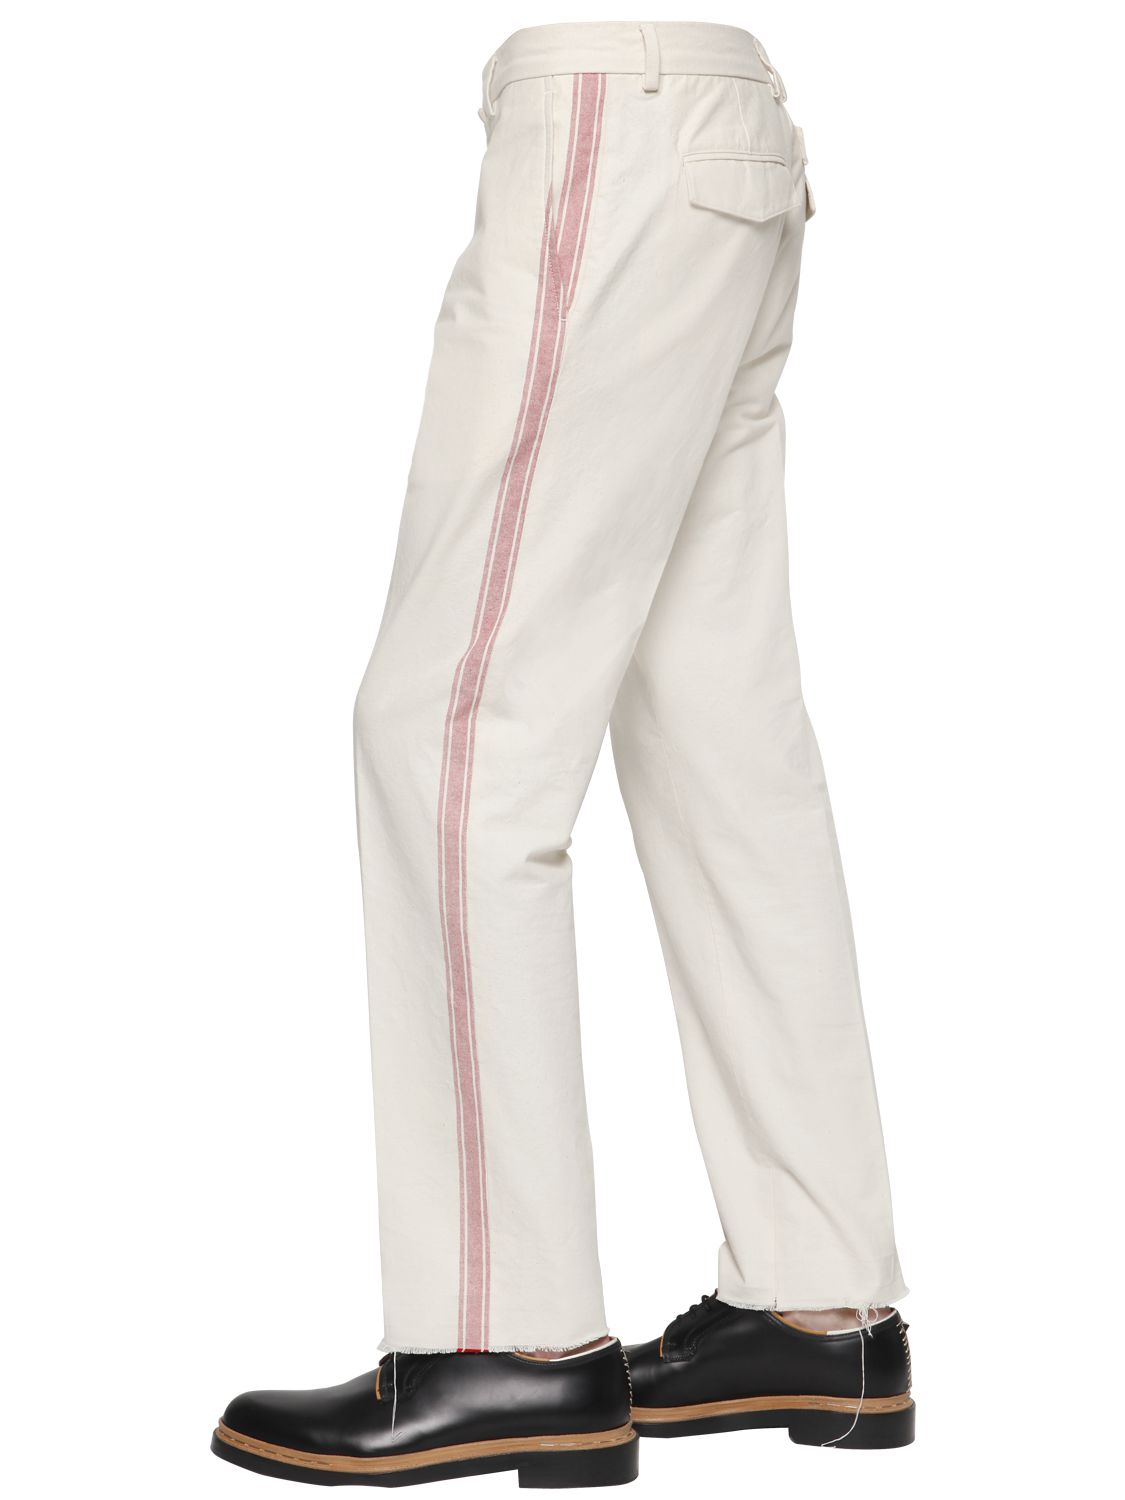 Valentino pantaloni in tela di cotone 18.5cm bianco sporco uomo abbigliamento,valentino slingback pumps,valentino abbigliamento trodica di morrovalle,piacevole